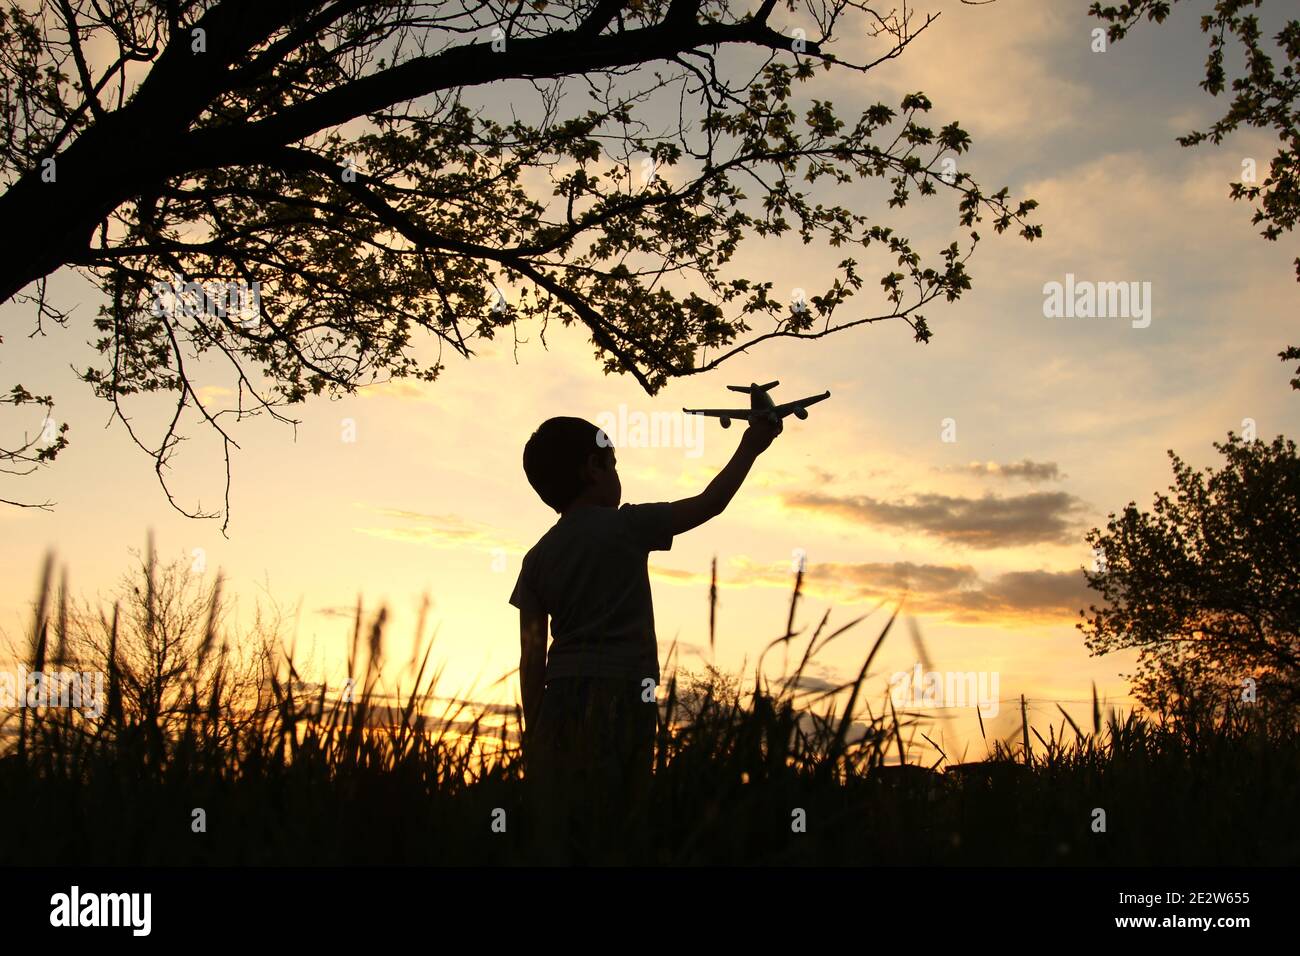 Un petit garçon en silhouette tenant un avion dans le champ à un magnifique coucher de soleil symbolisant la paix dans le monde Banque D'Images